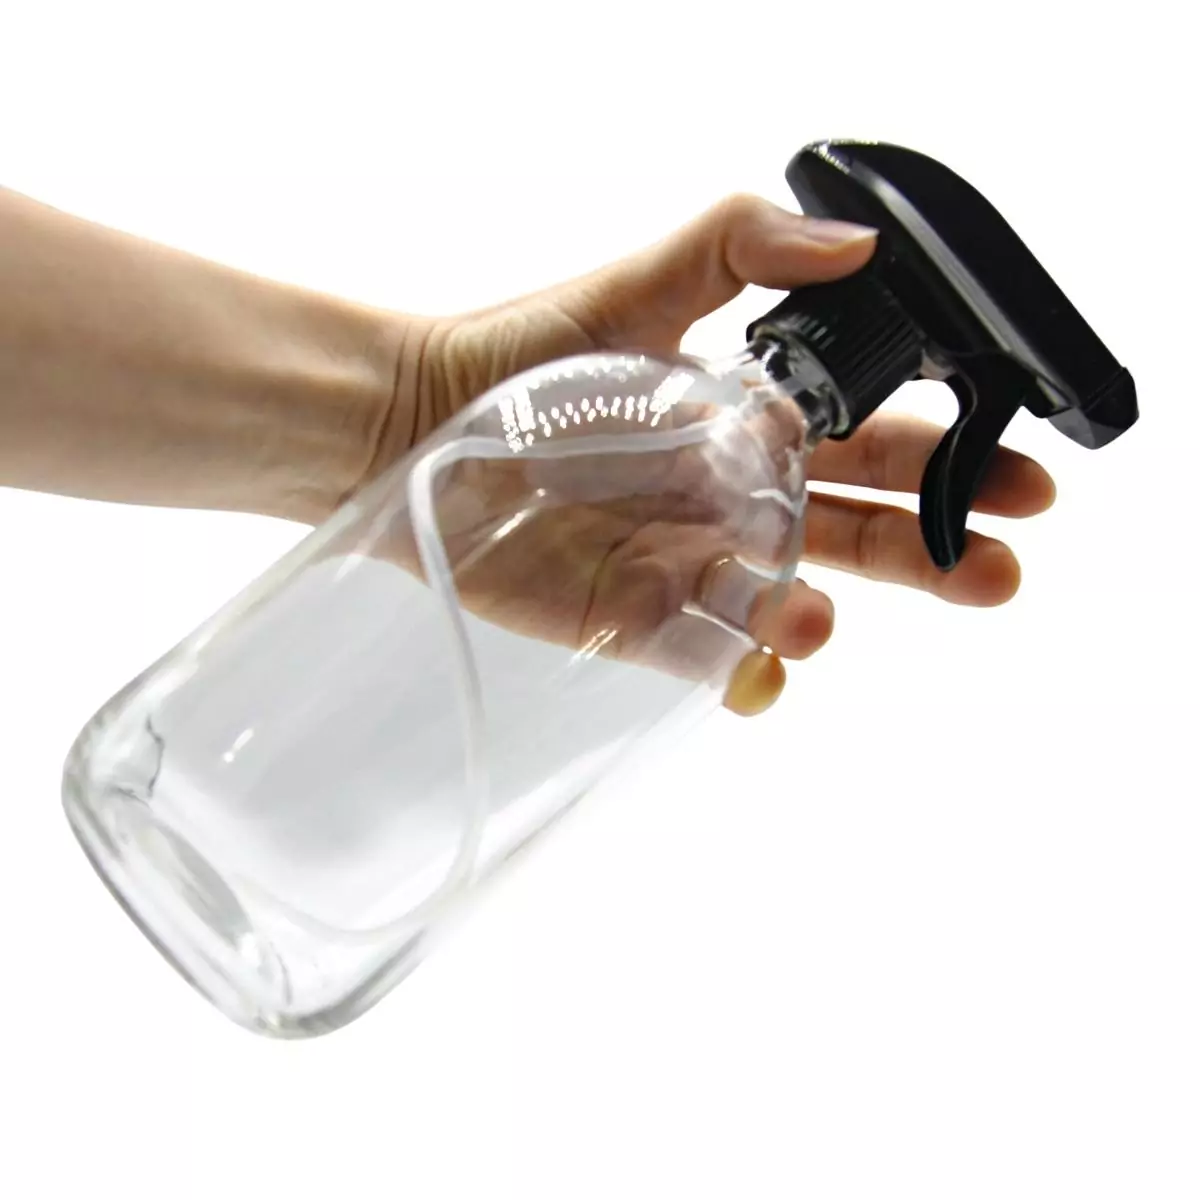 Botella de vidrio transparente con pulverizador mano